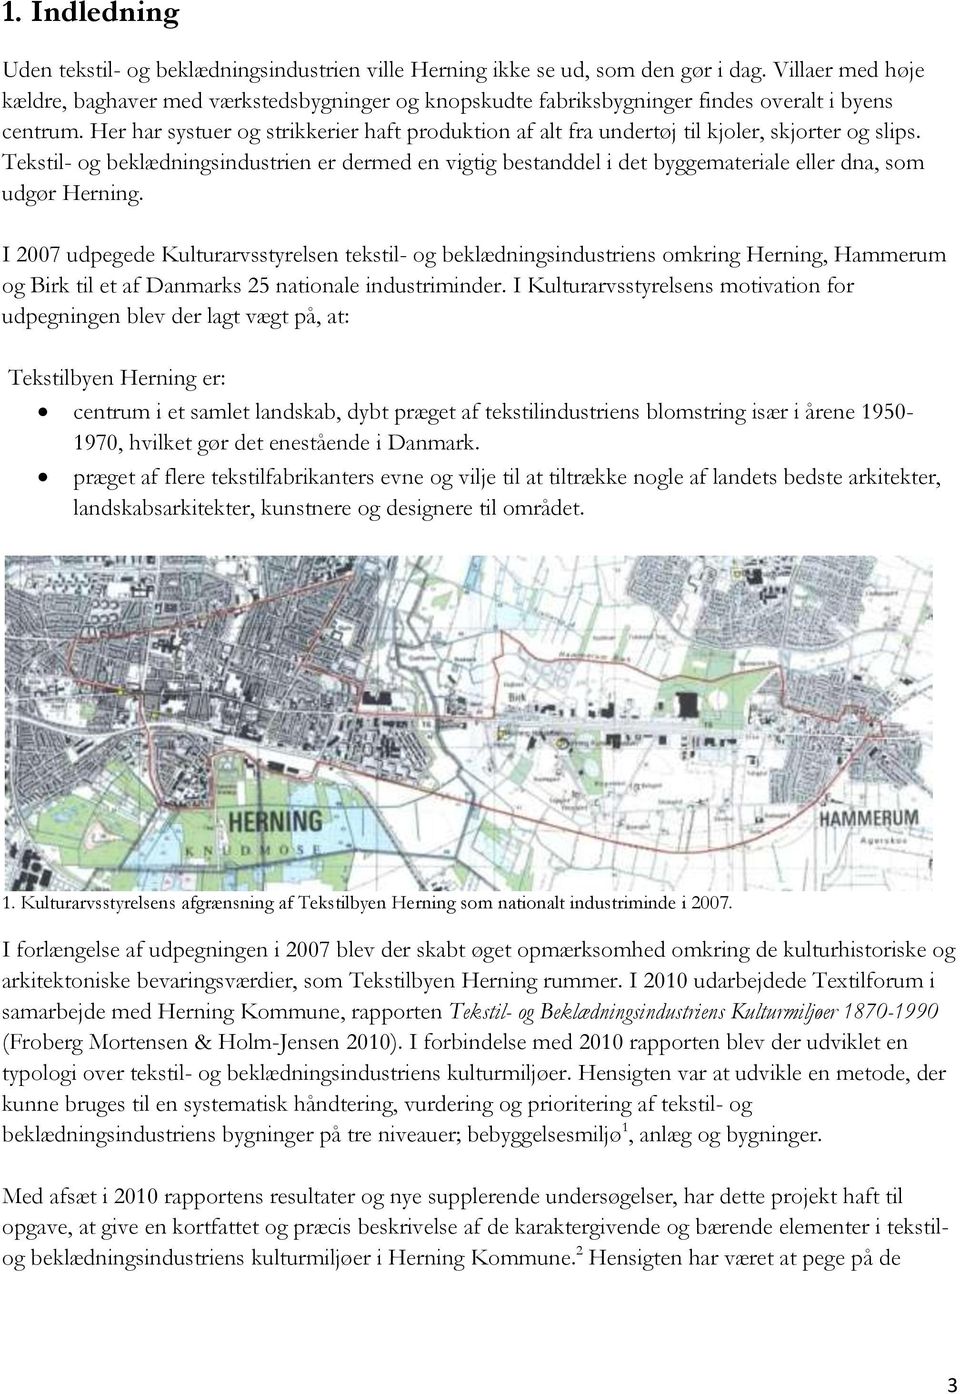 Tekstilbyen Herning. Introduktion til tekstil- og beklædningsindustriens  kulturmiljøer i Herning, Hammerum og Birk - PDF Gratis download